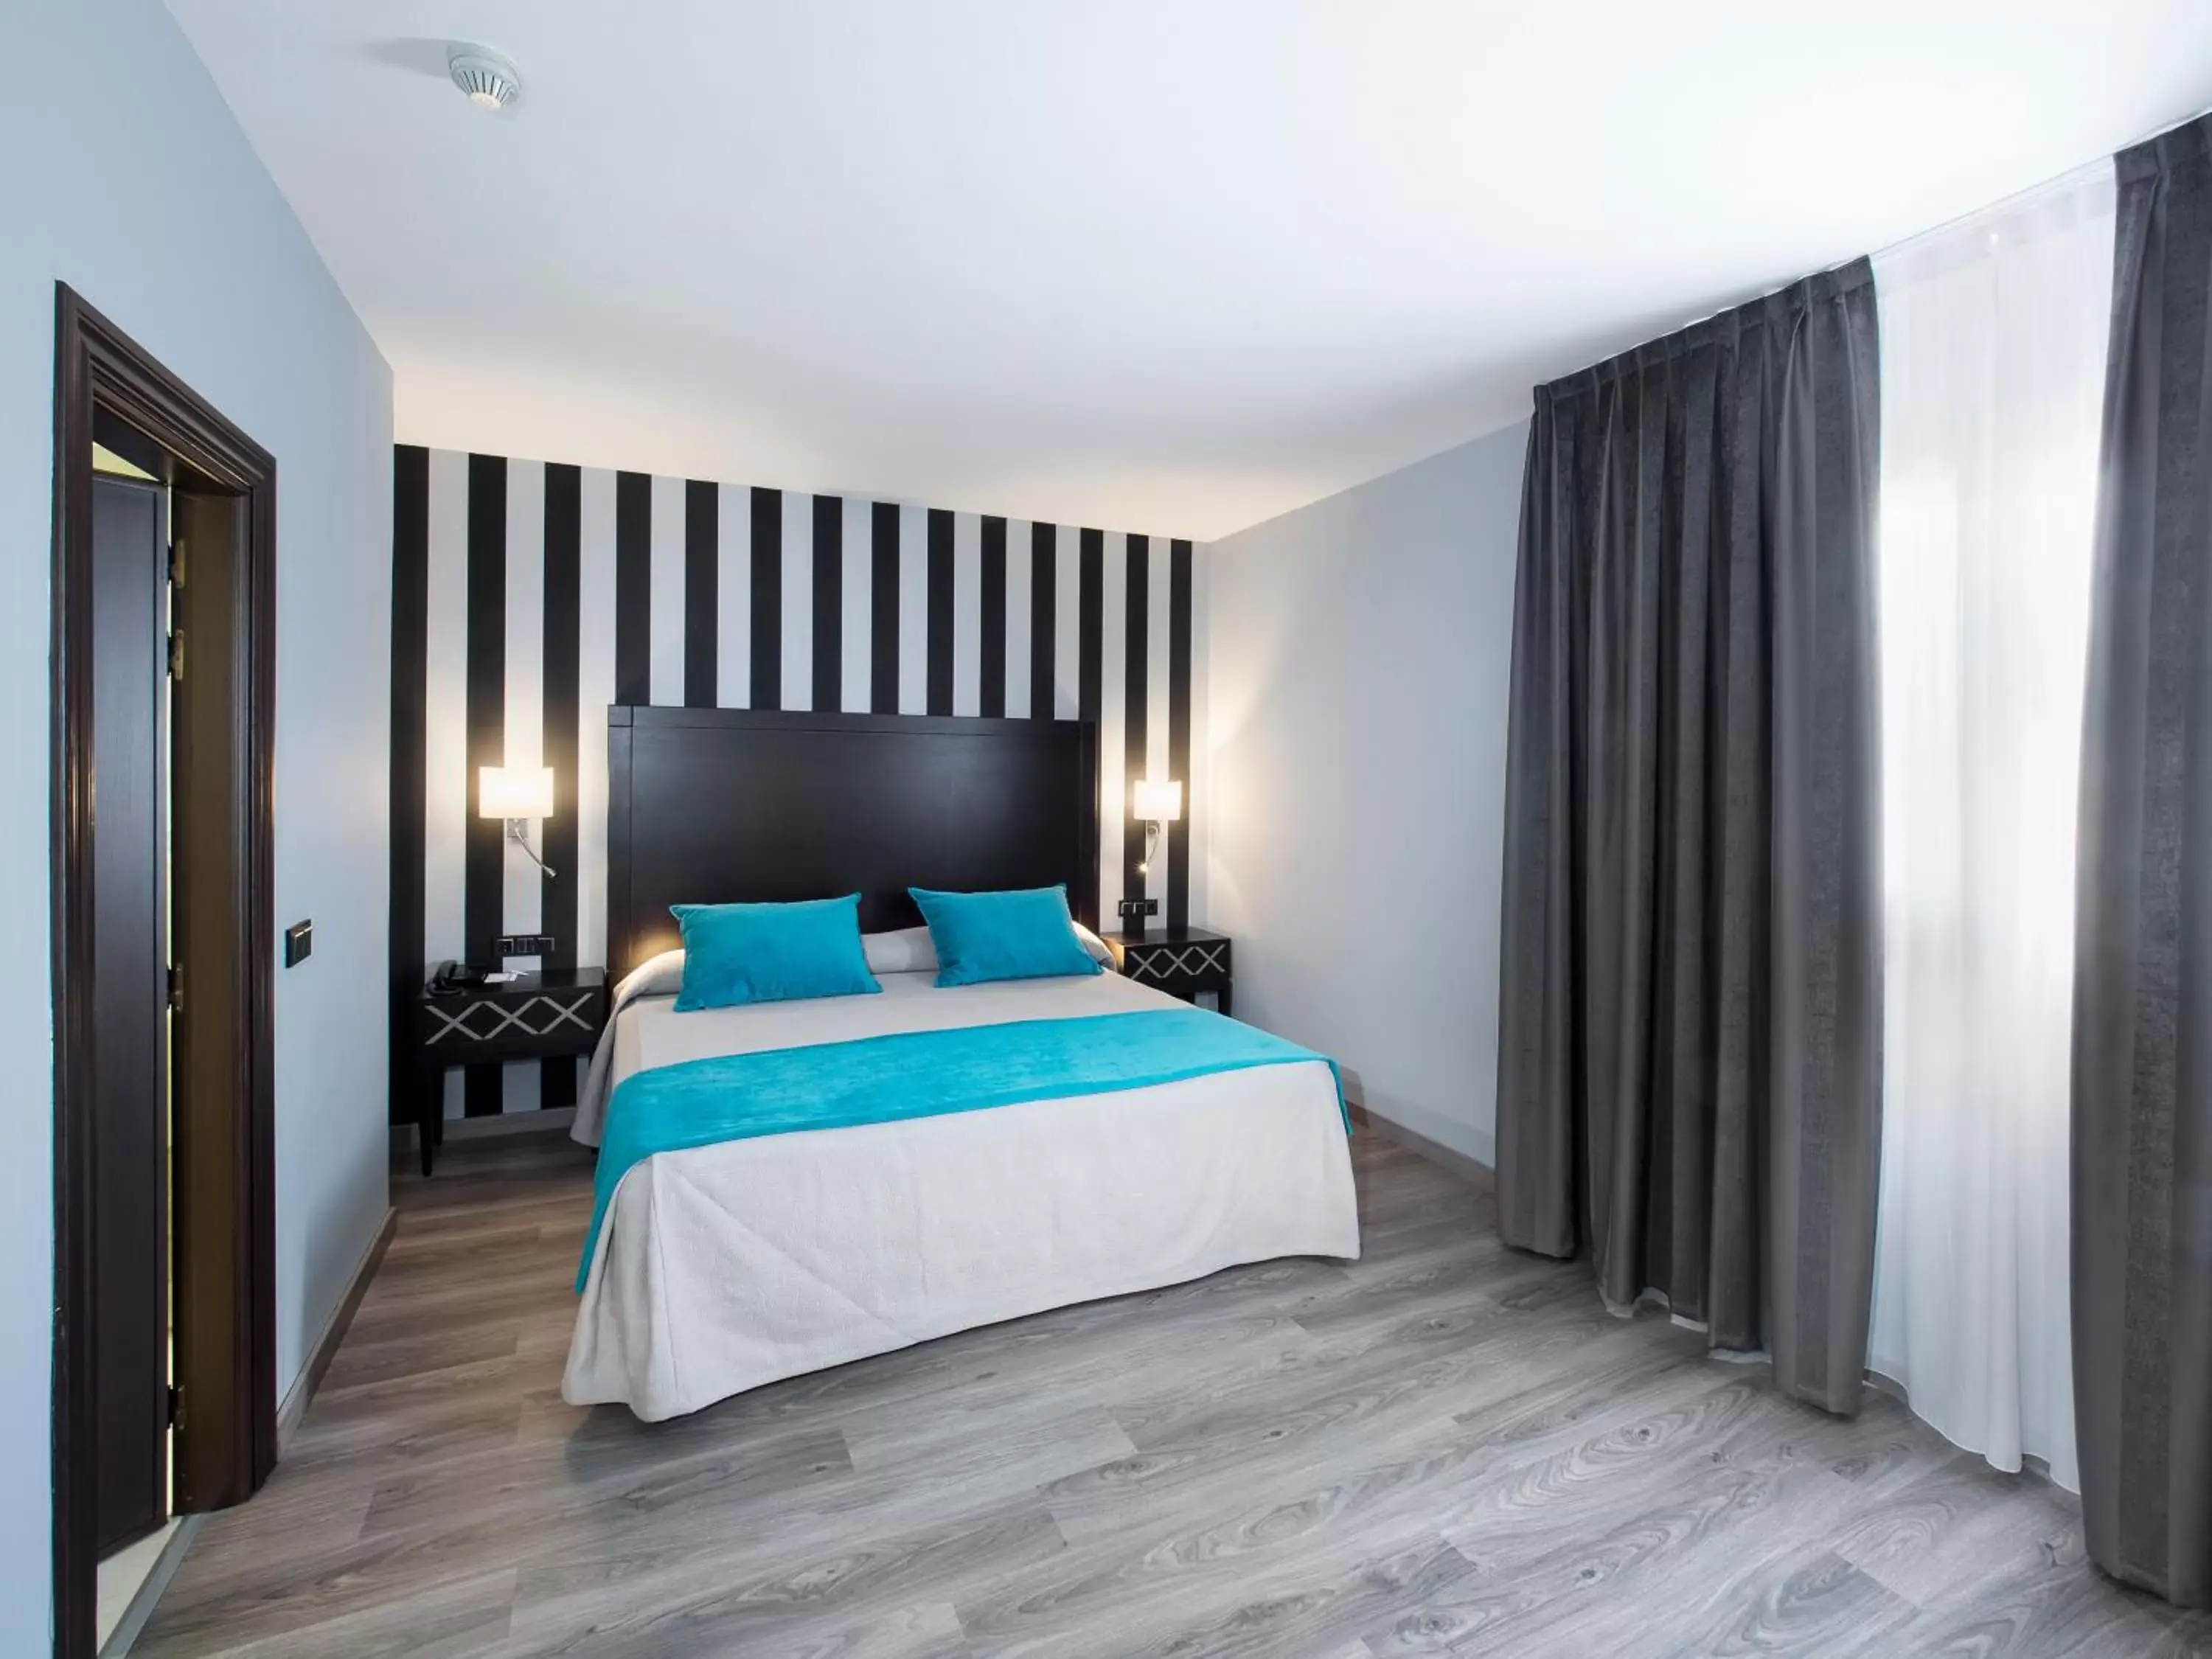 Bedroom, Room Photo in Hotel Zentral Parque